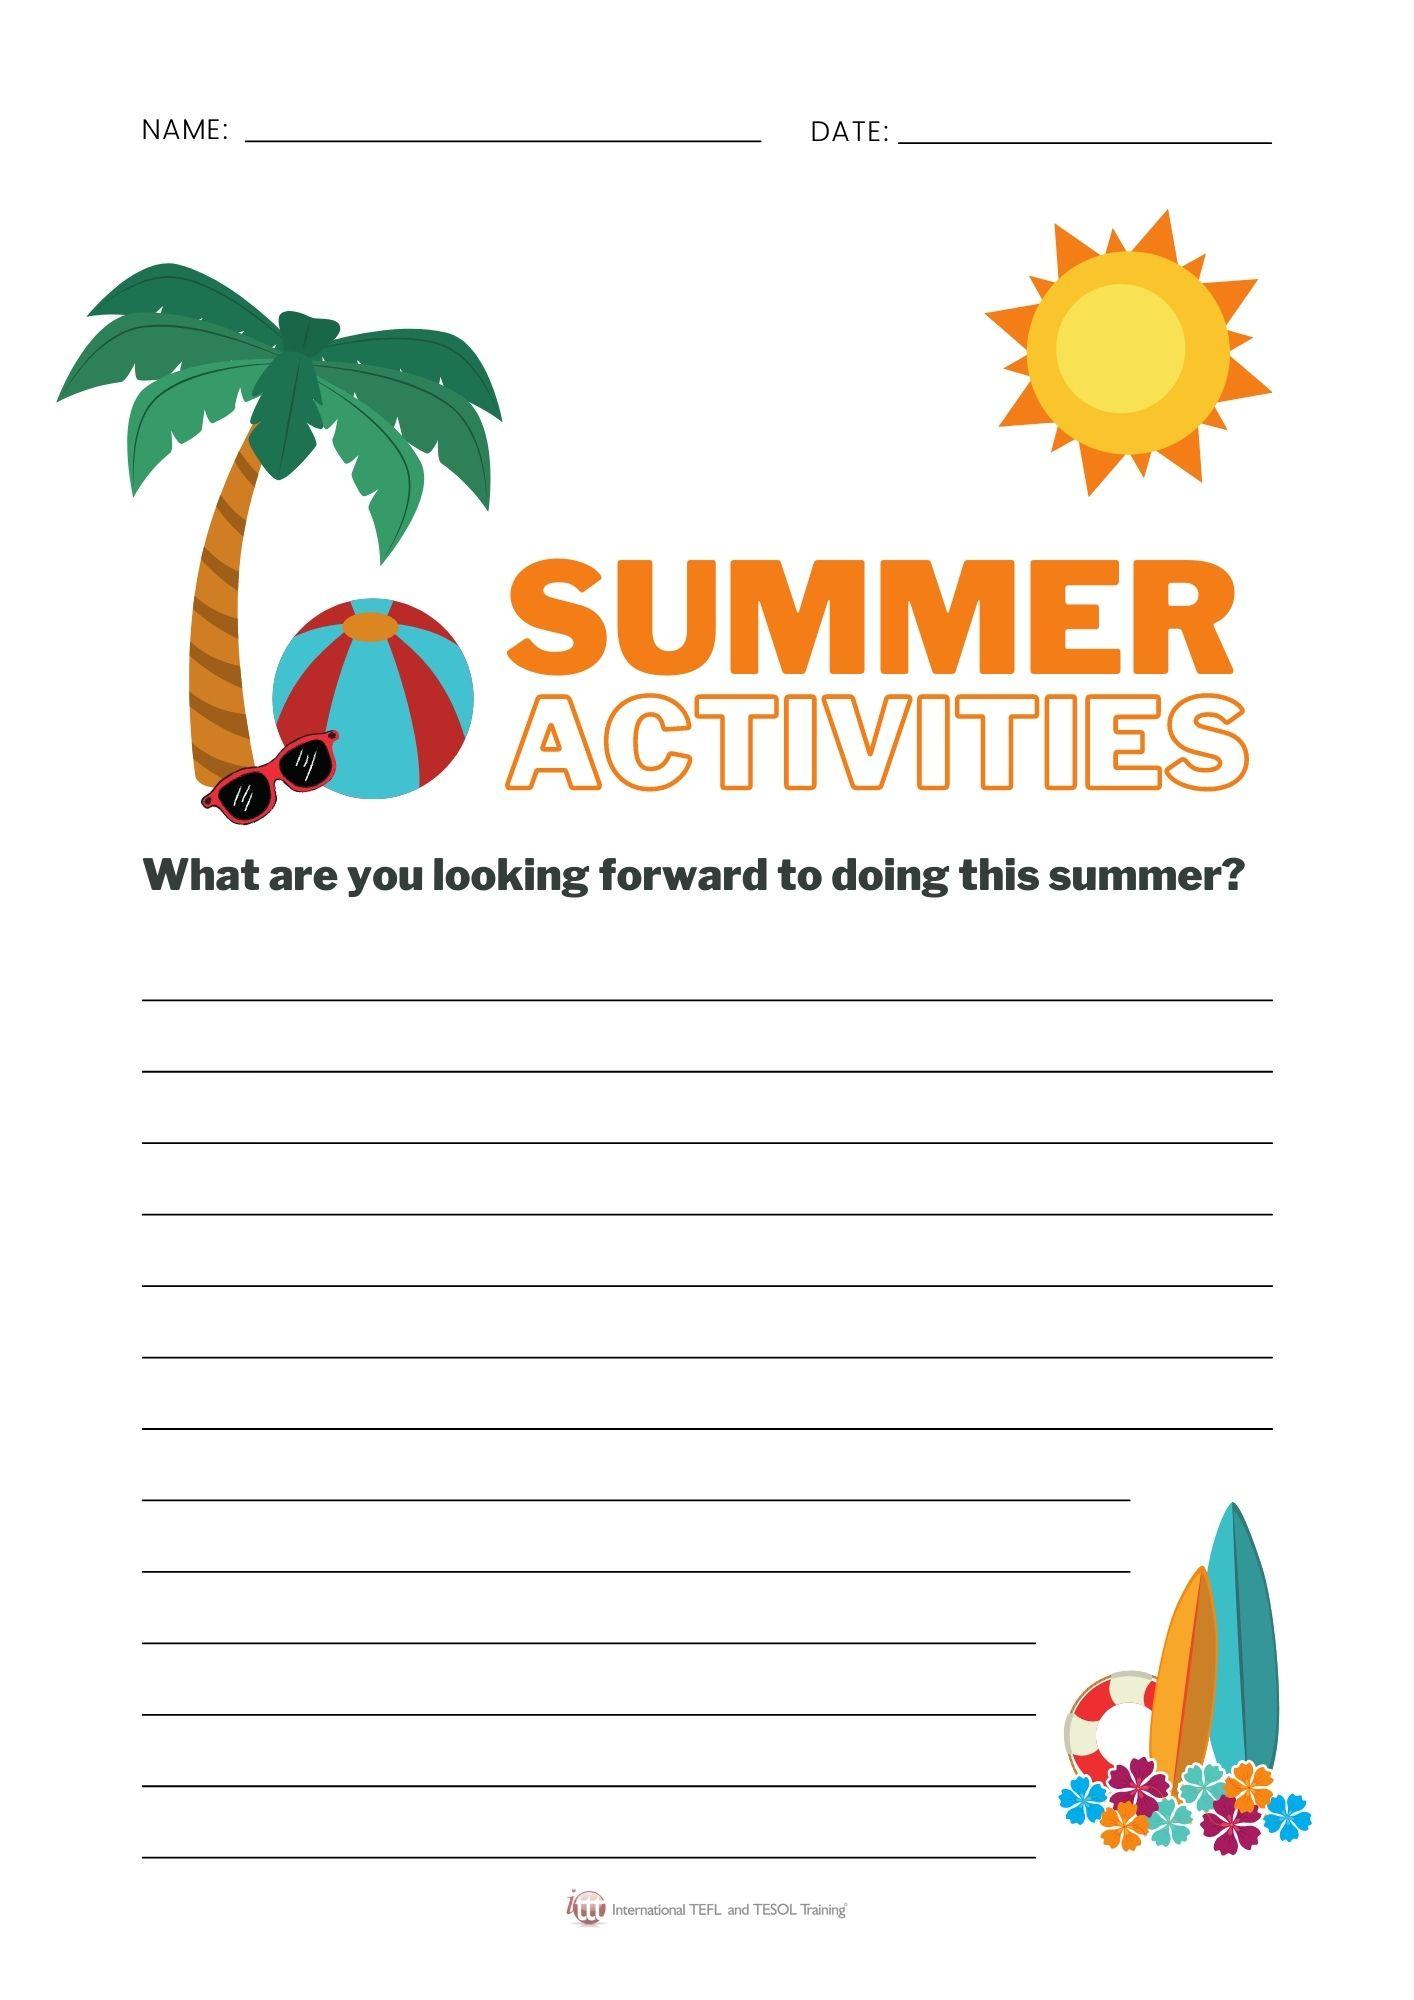 Grammar corner Summer Activities Writing Activity